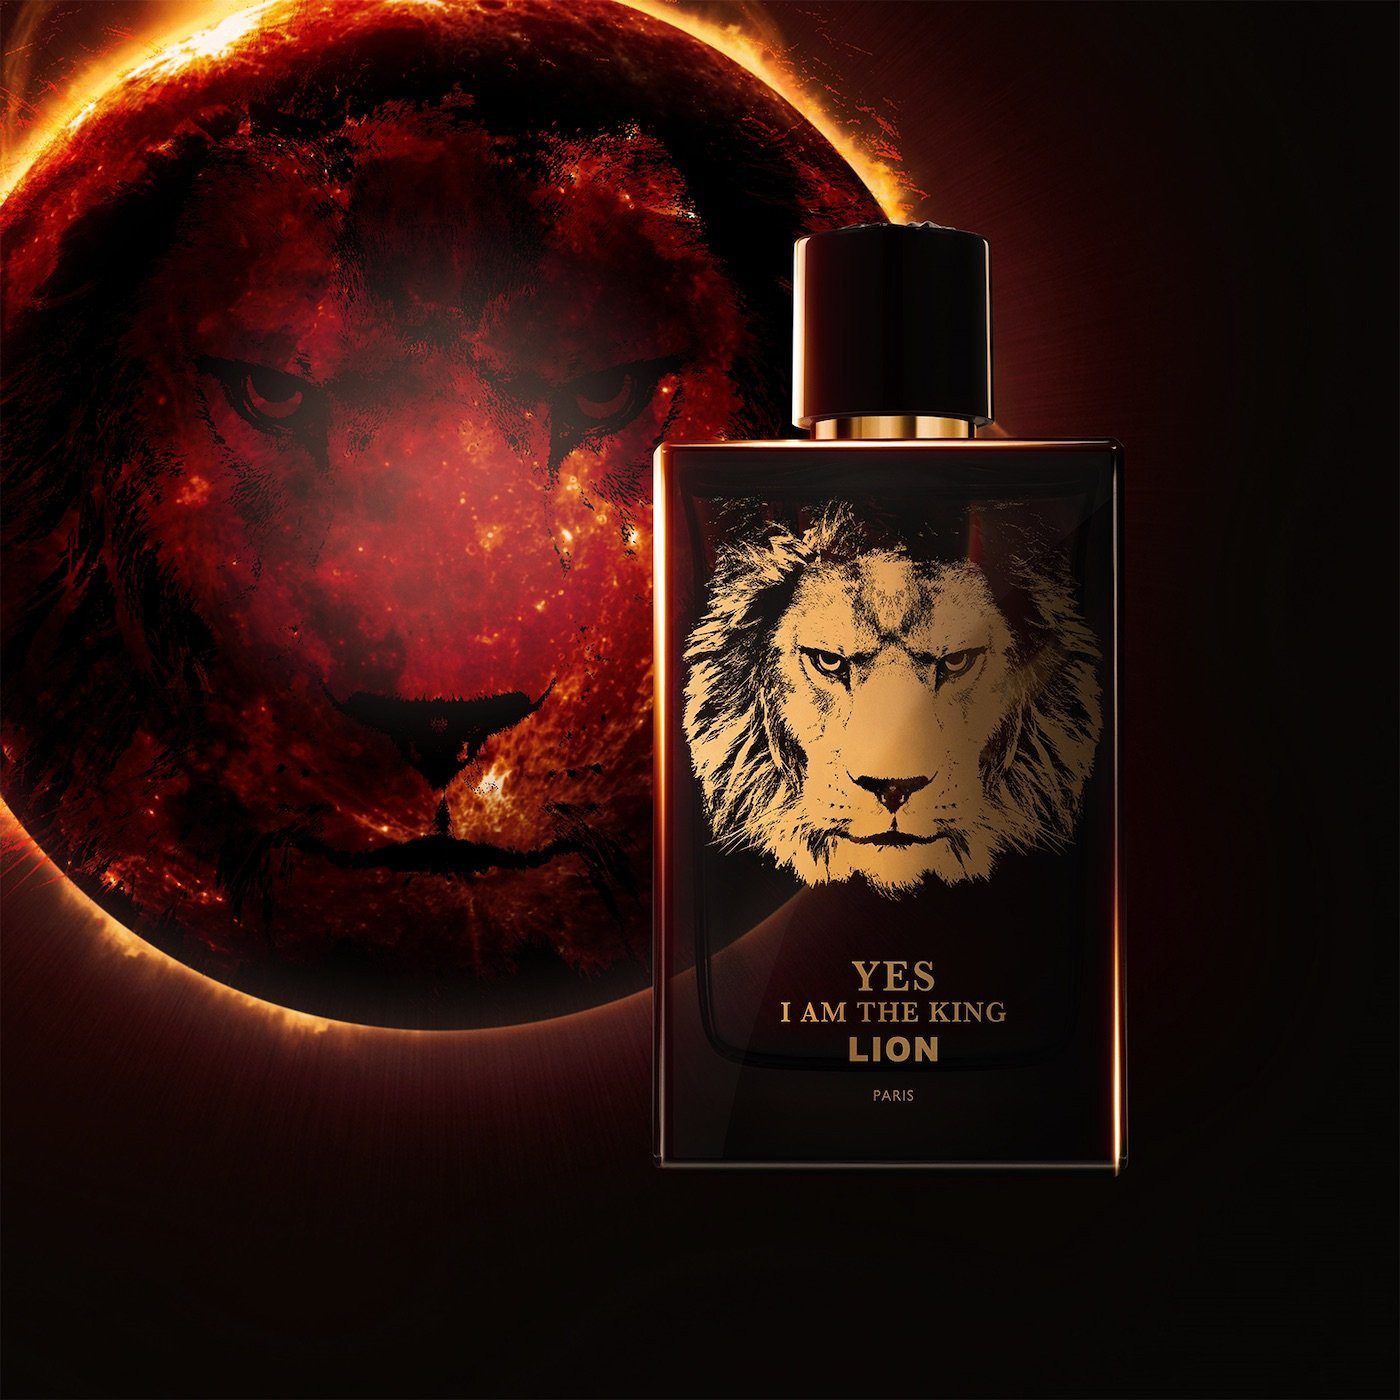 Yes I Am The King Lion Eau de Parfum 100 ml